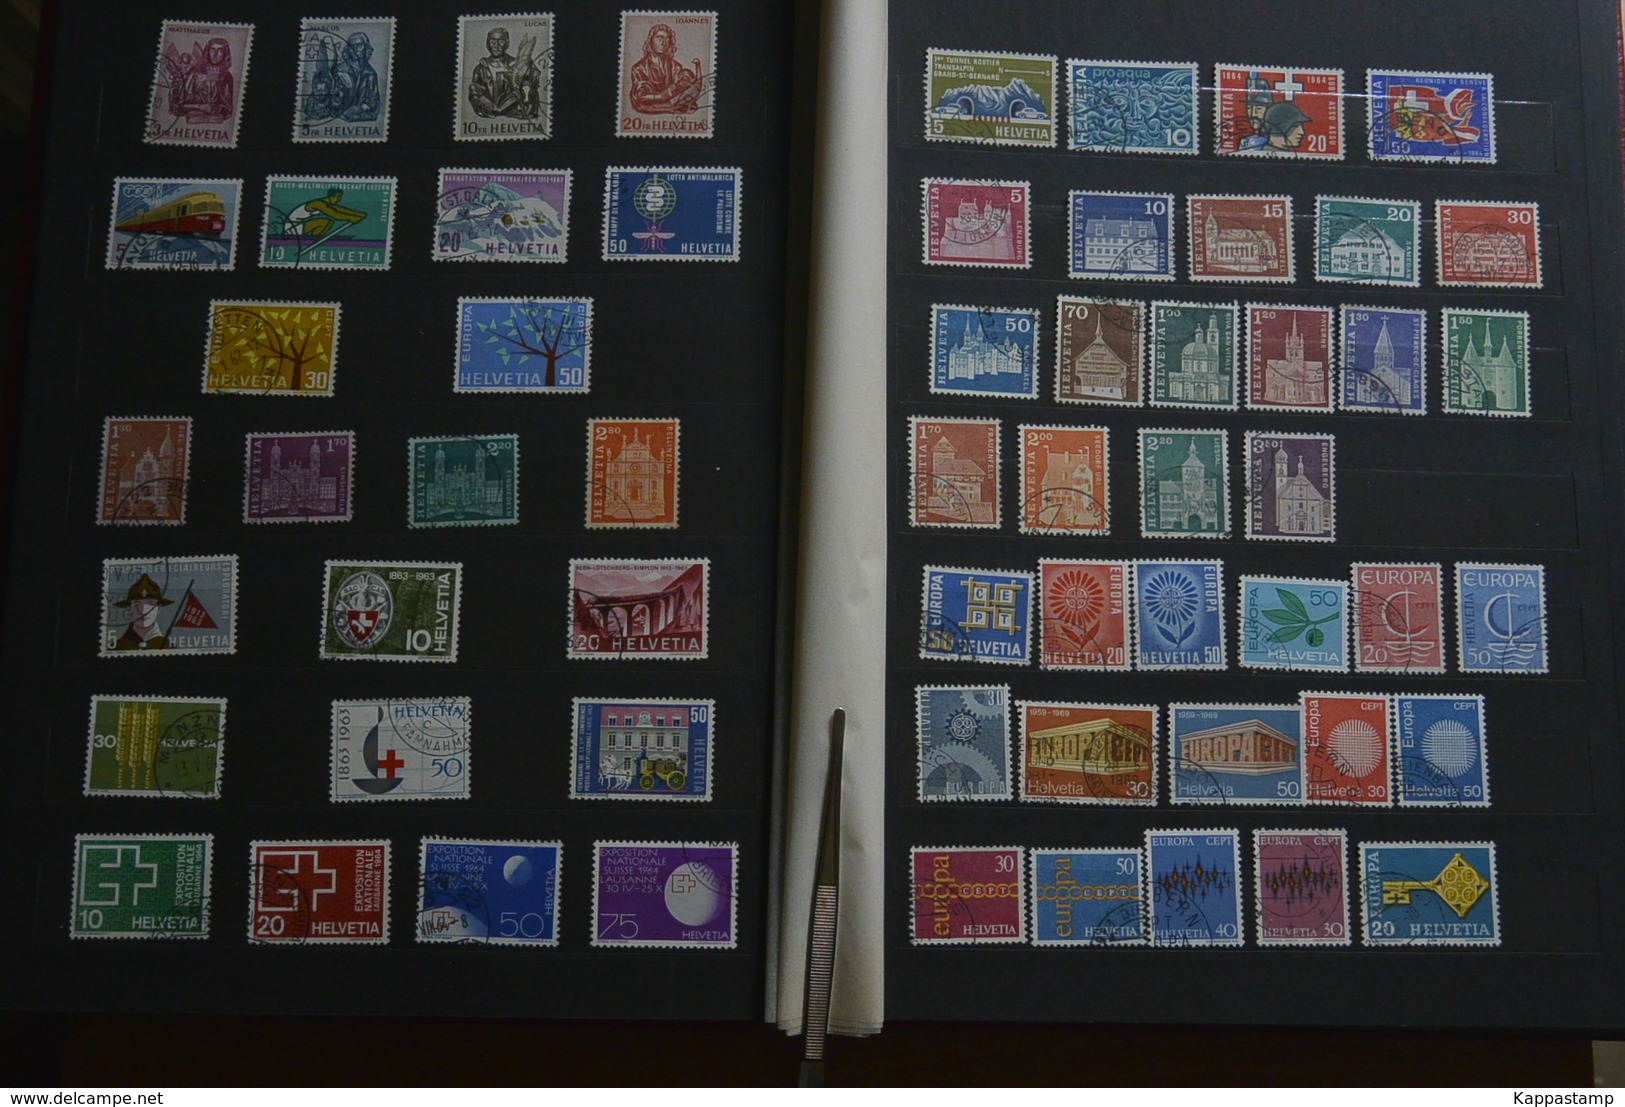 Svizzera magnifica collezione di francobolli in 4 album usati(31521